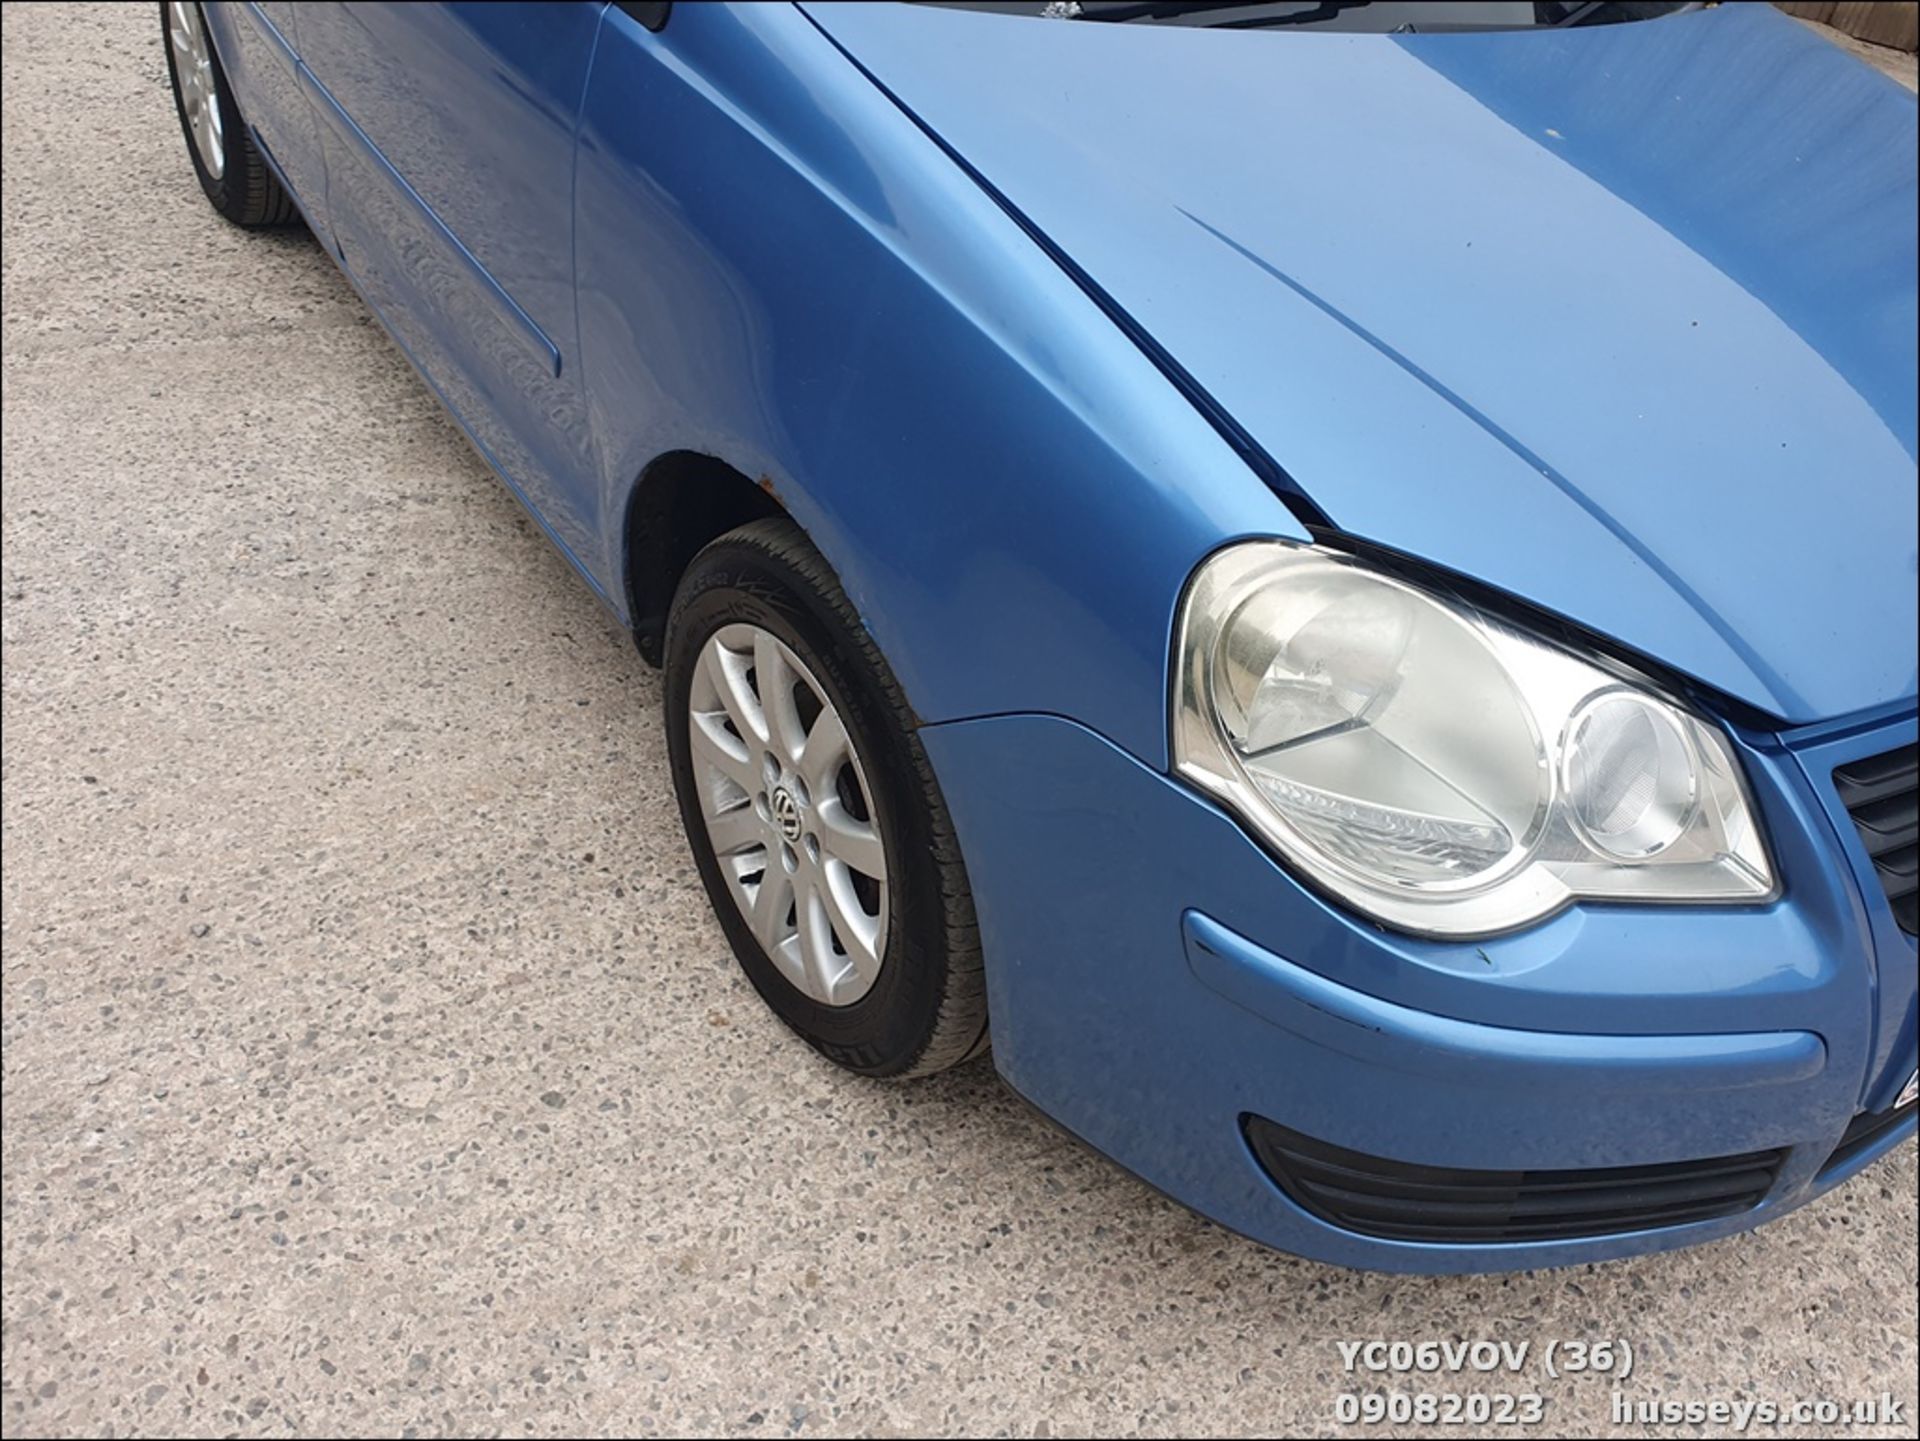 06/06 VOLKSWAGEN POLO SE TDI 80 - 1400cc 5dr Hatchback (Blue, 164k) - Image 37 of 61